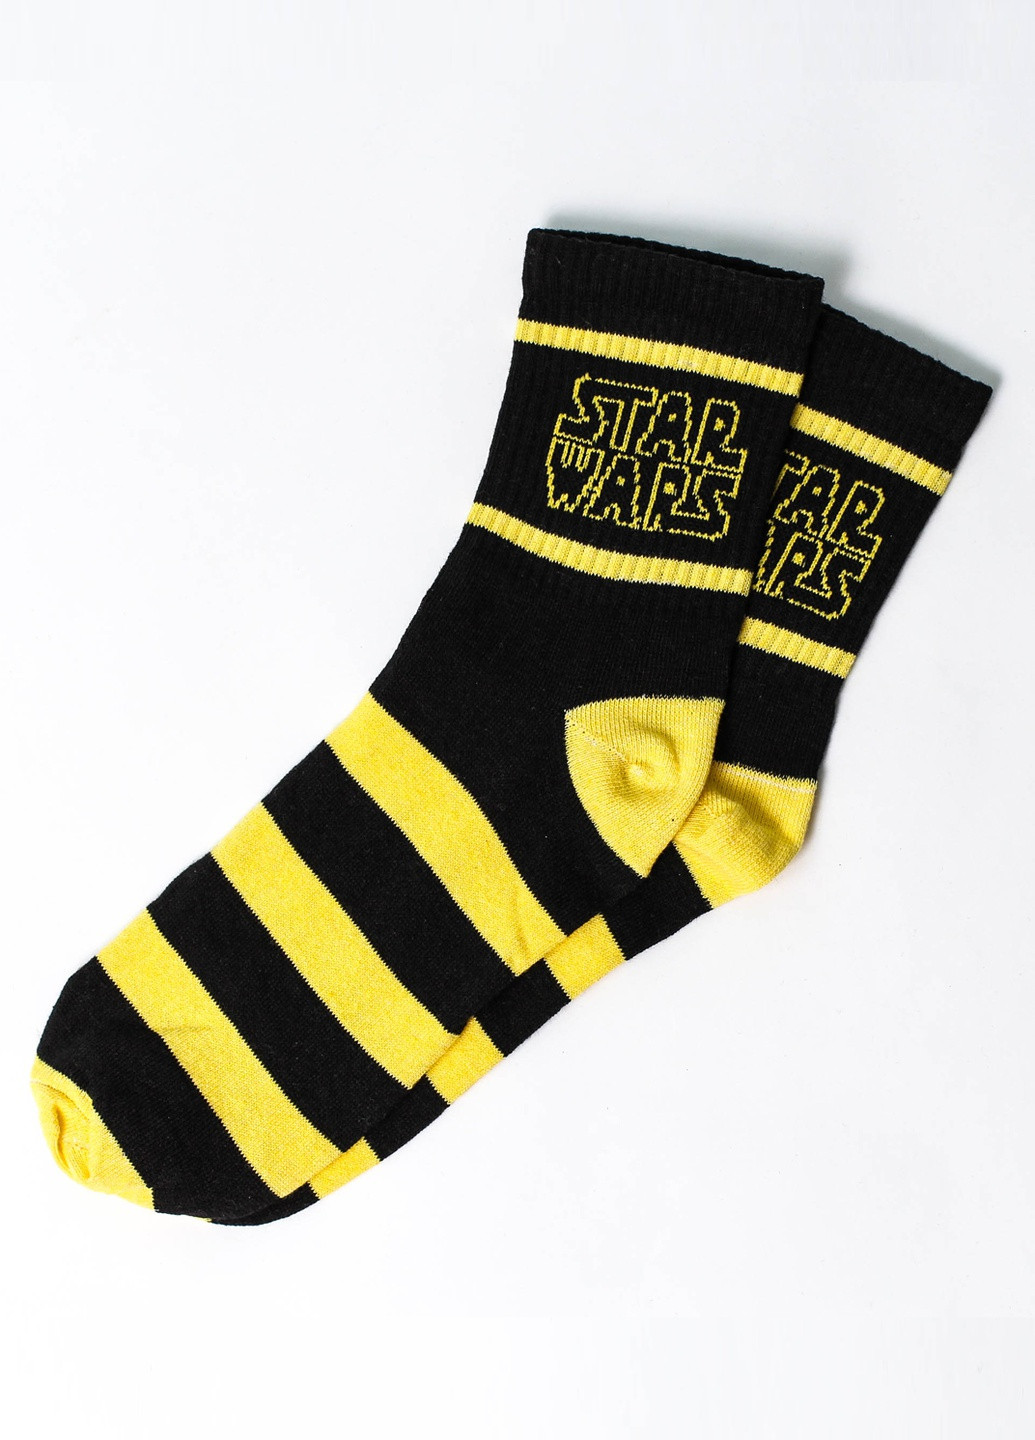 Носки Stаr Wars Rock'n'socks высокие (211258827)